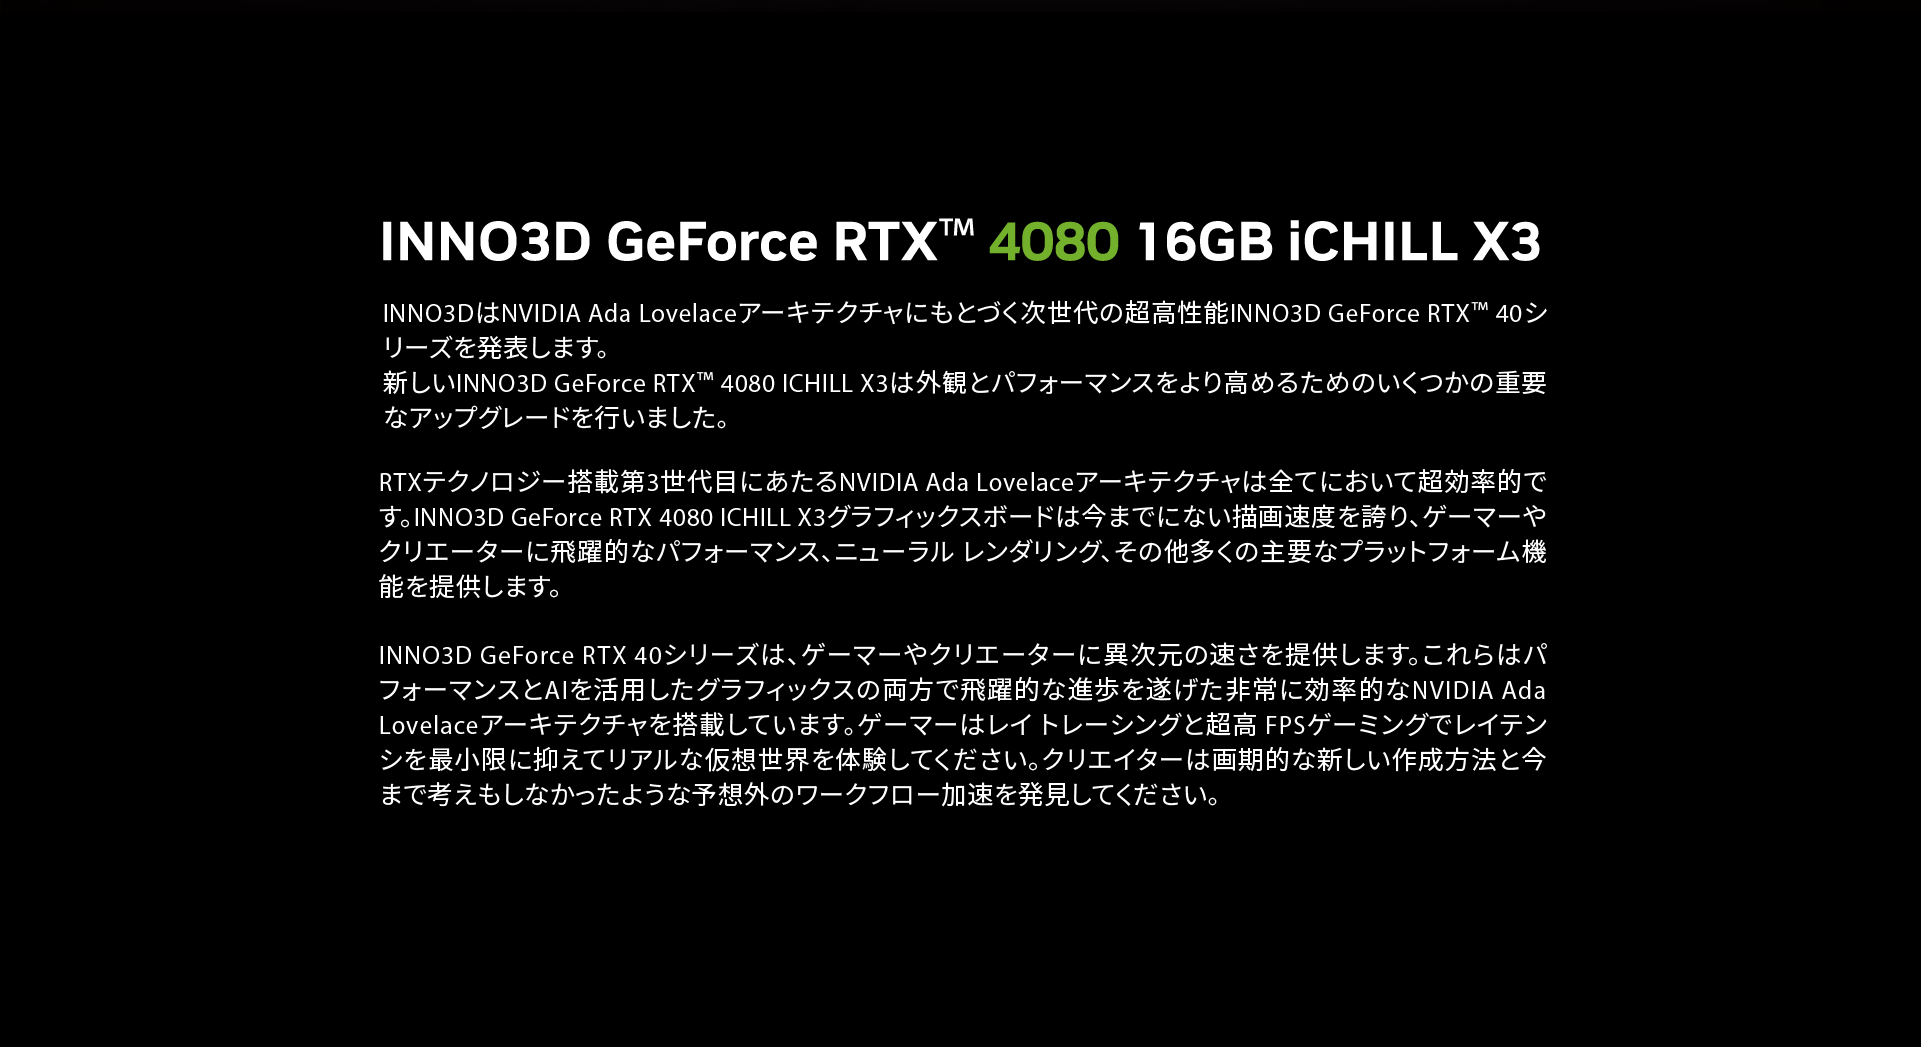 INNO3DはNVIDIA Ada Lovelaceアーキテクチャにもとづく次世代の超高性能INNO3D GeForce RTX™ 40シリーズを発表します。
新しいINNO3D GeForce RTX™ 4080 ICHILL X3は外観とパフォーマンスをより高めるためのいくつかの重要なアップグレードを行いました。